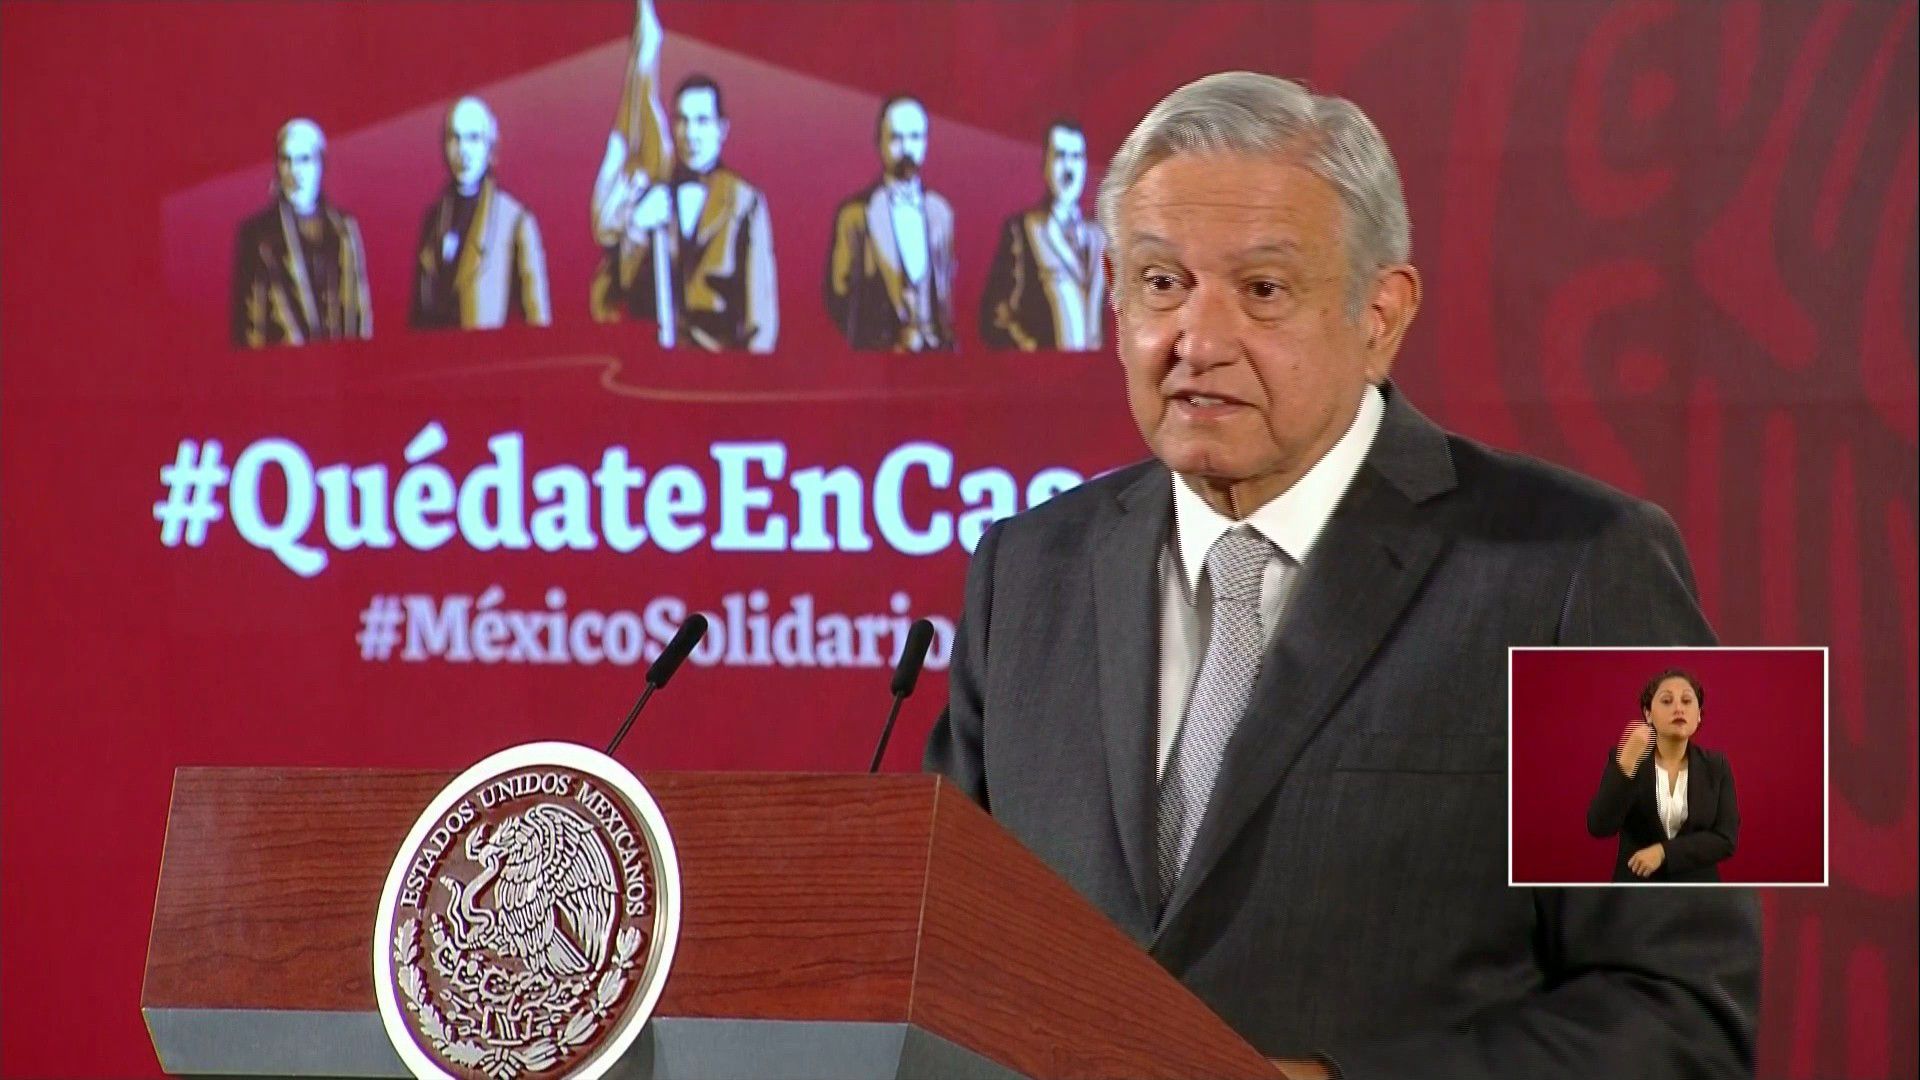 El presidente de México, Andrés Manuel López Obrador agradeció el miércoles al gobierno de China por las facilidades que otorgó para la compra de insumos y equipo médico para que el país latinoamericano enfrente el brote del nuevo coronavirus.